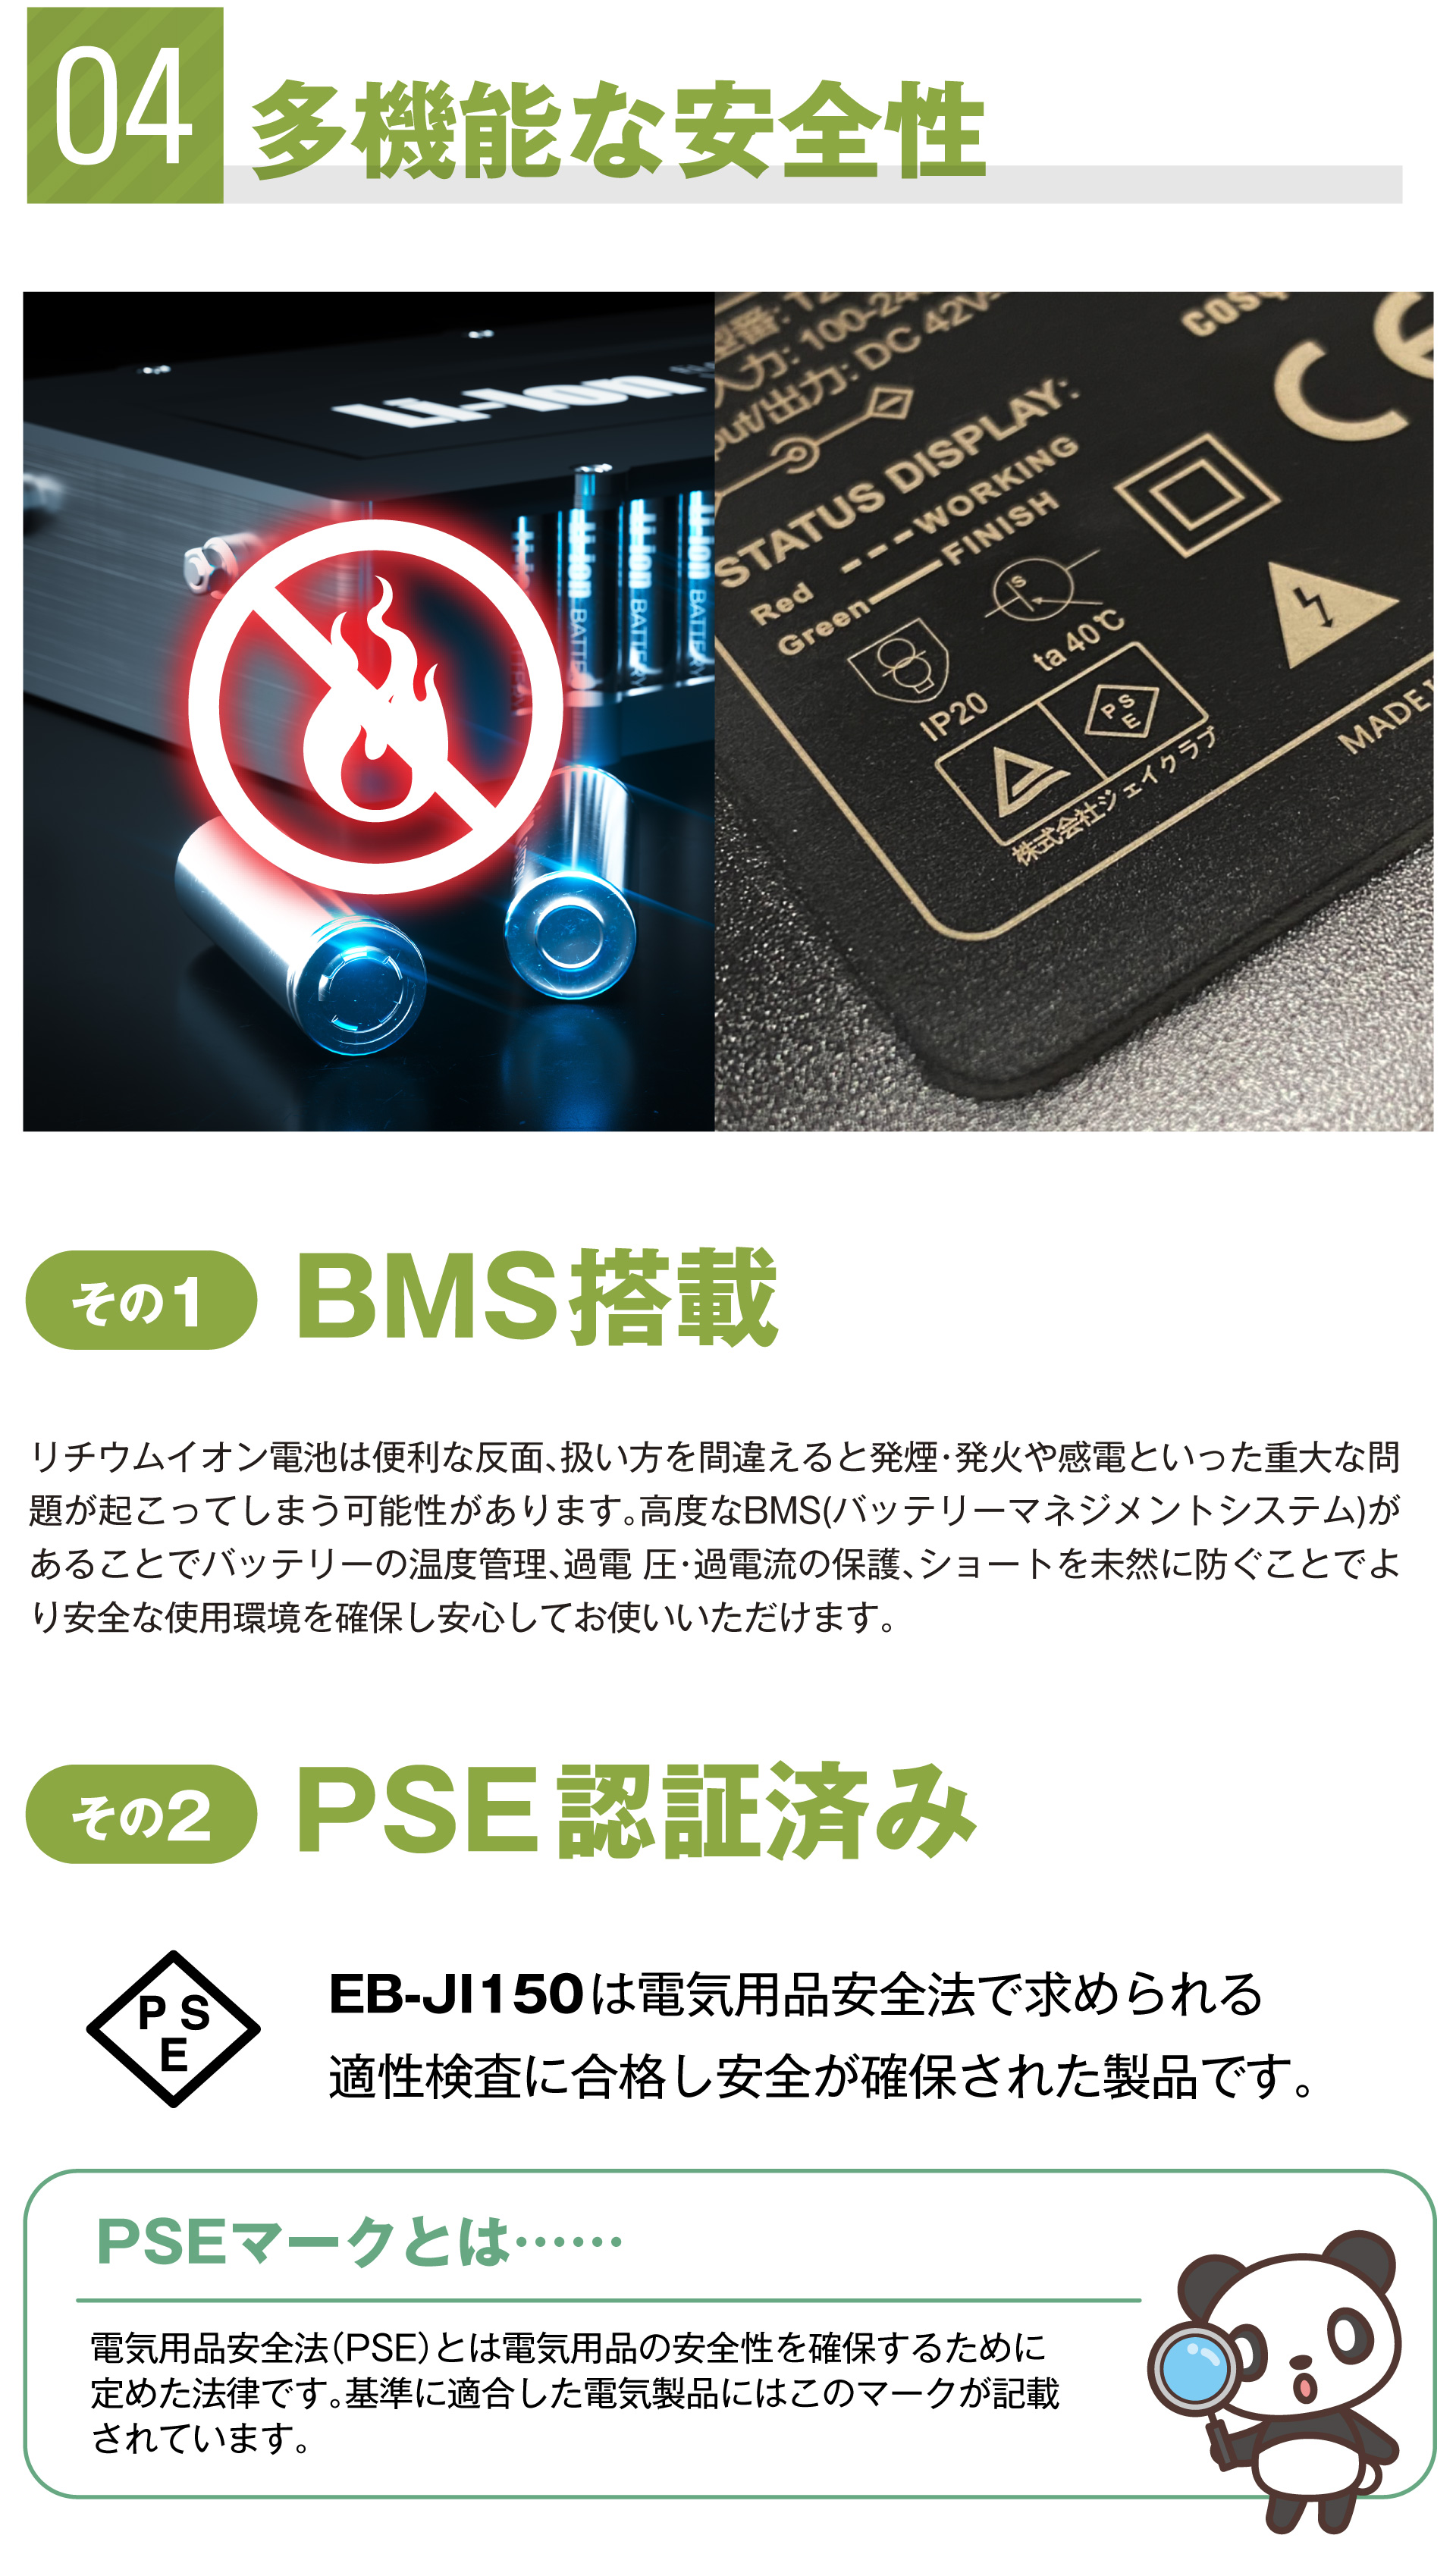 04. 多機能な安全性 BMS搭載 PSE認証済み